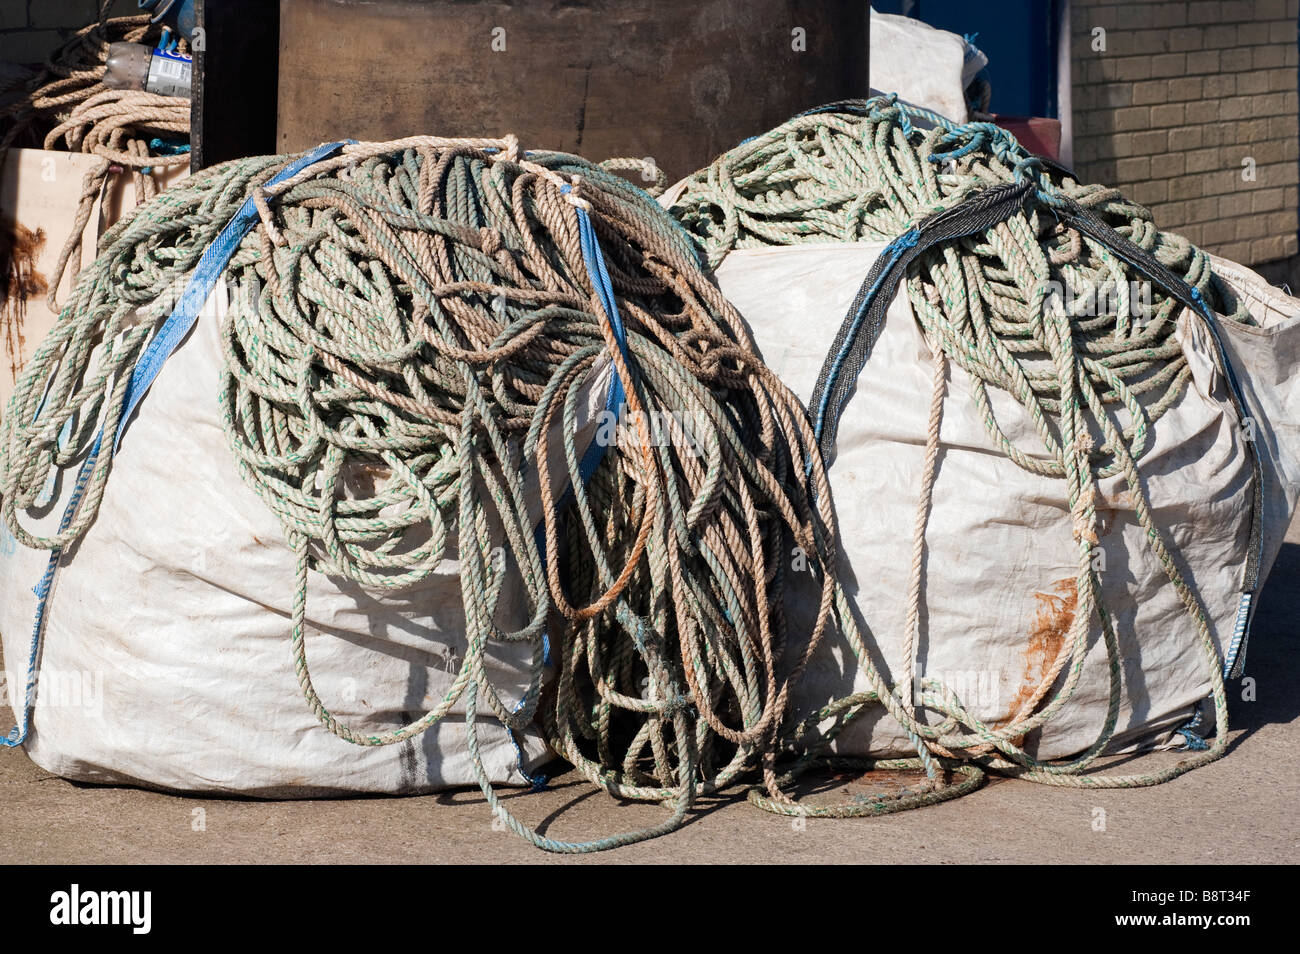 Two large sacks of fishing ropes Stock Photo